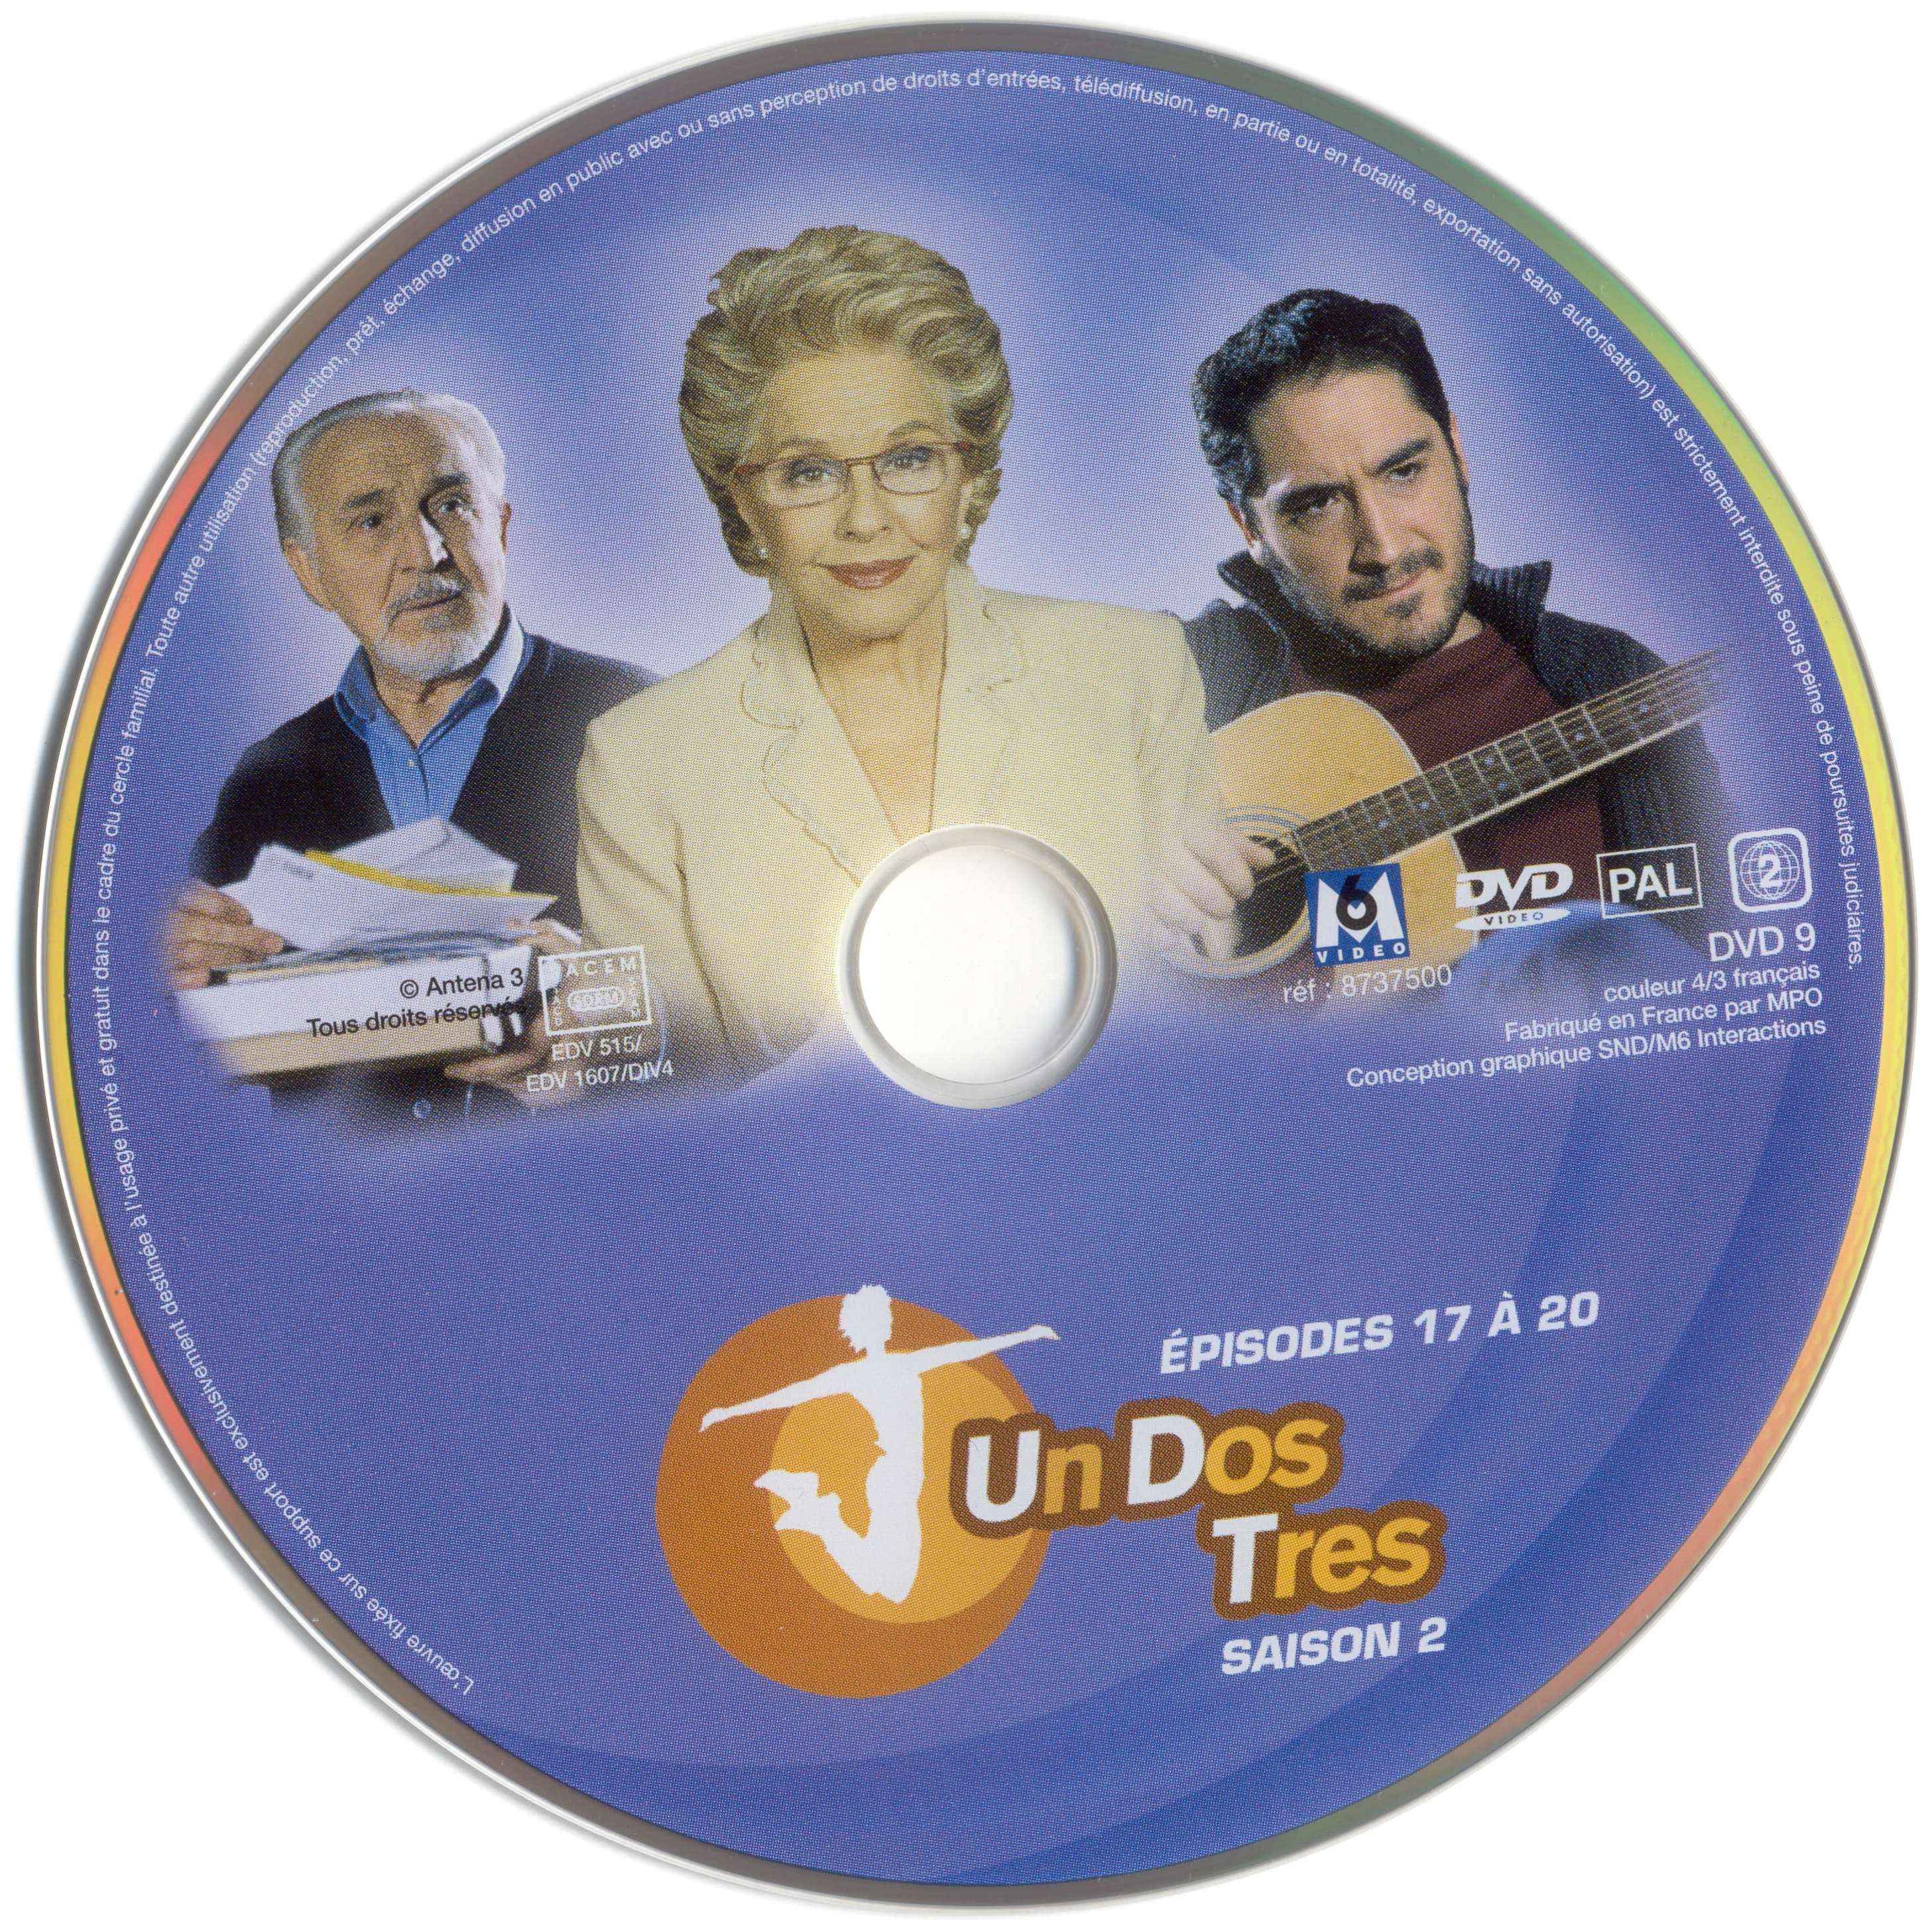 Un dos tres Saison 2 DVD 5